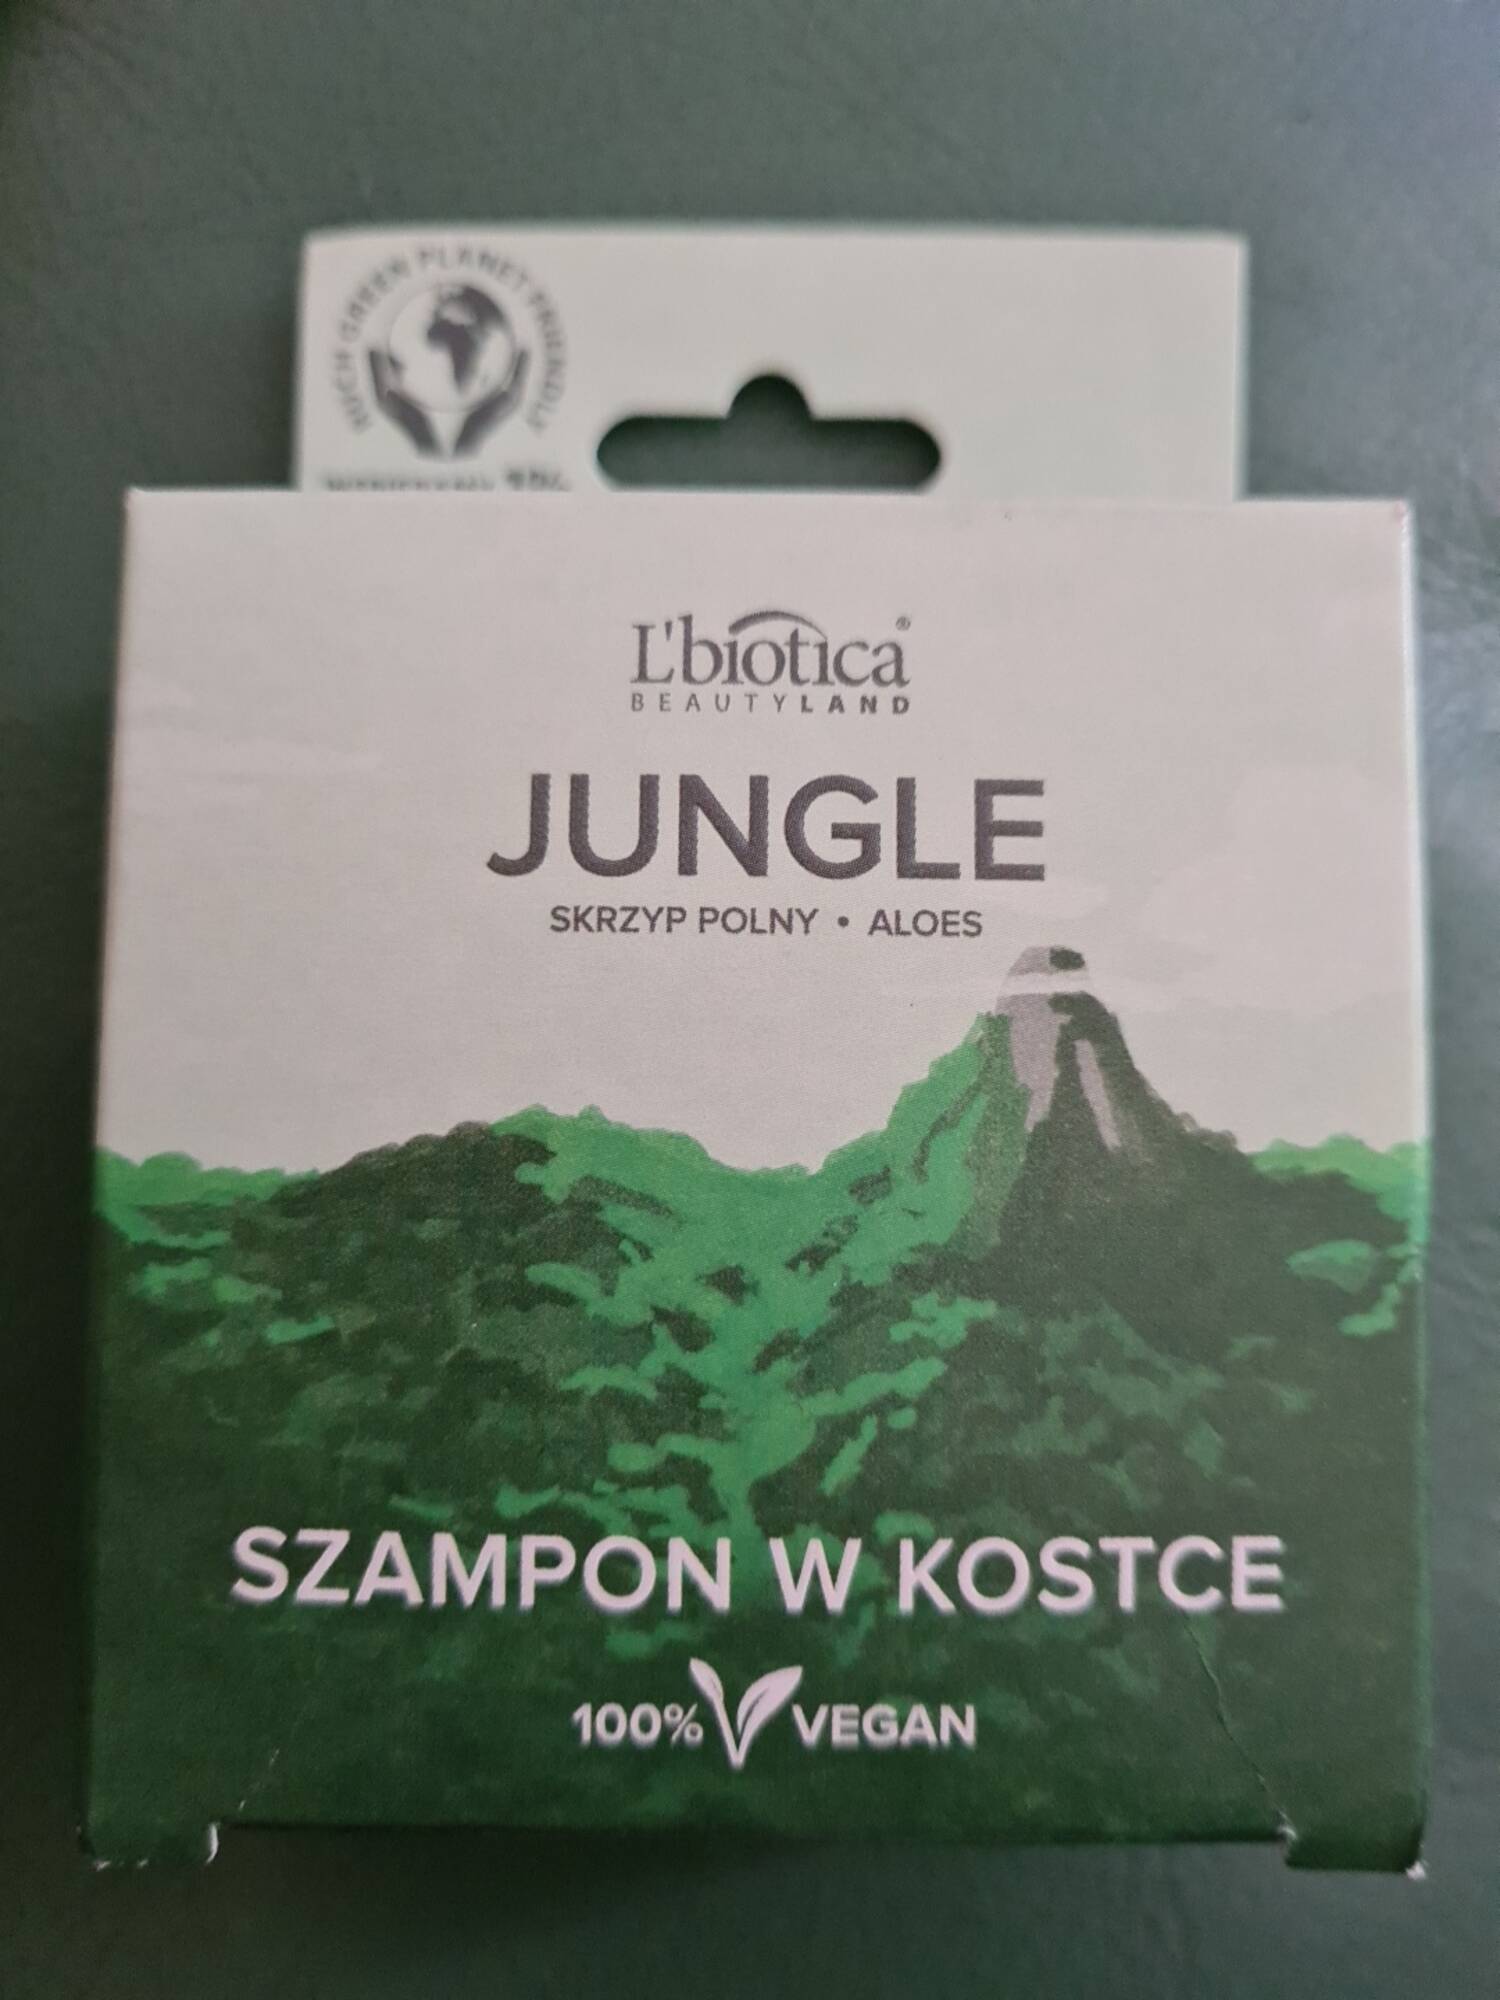 L'BIOTICA - Jungle - Szampon w kostce